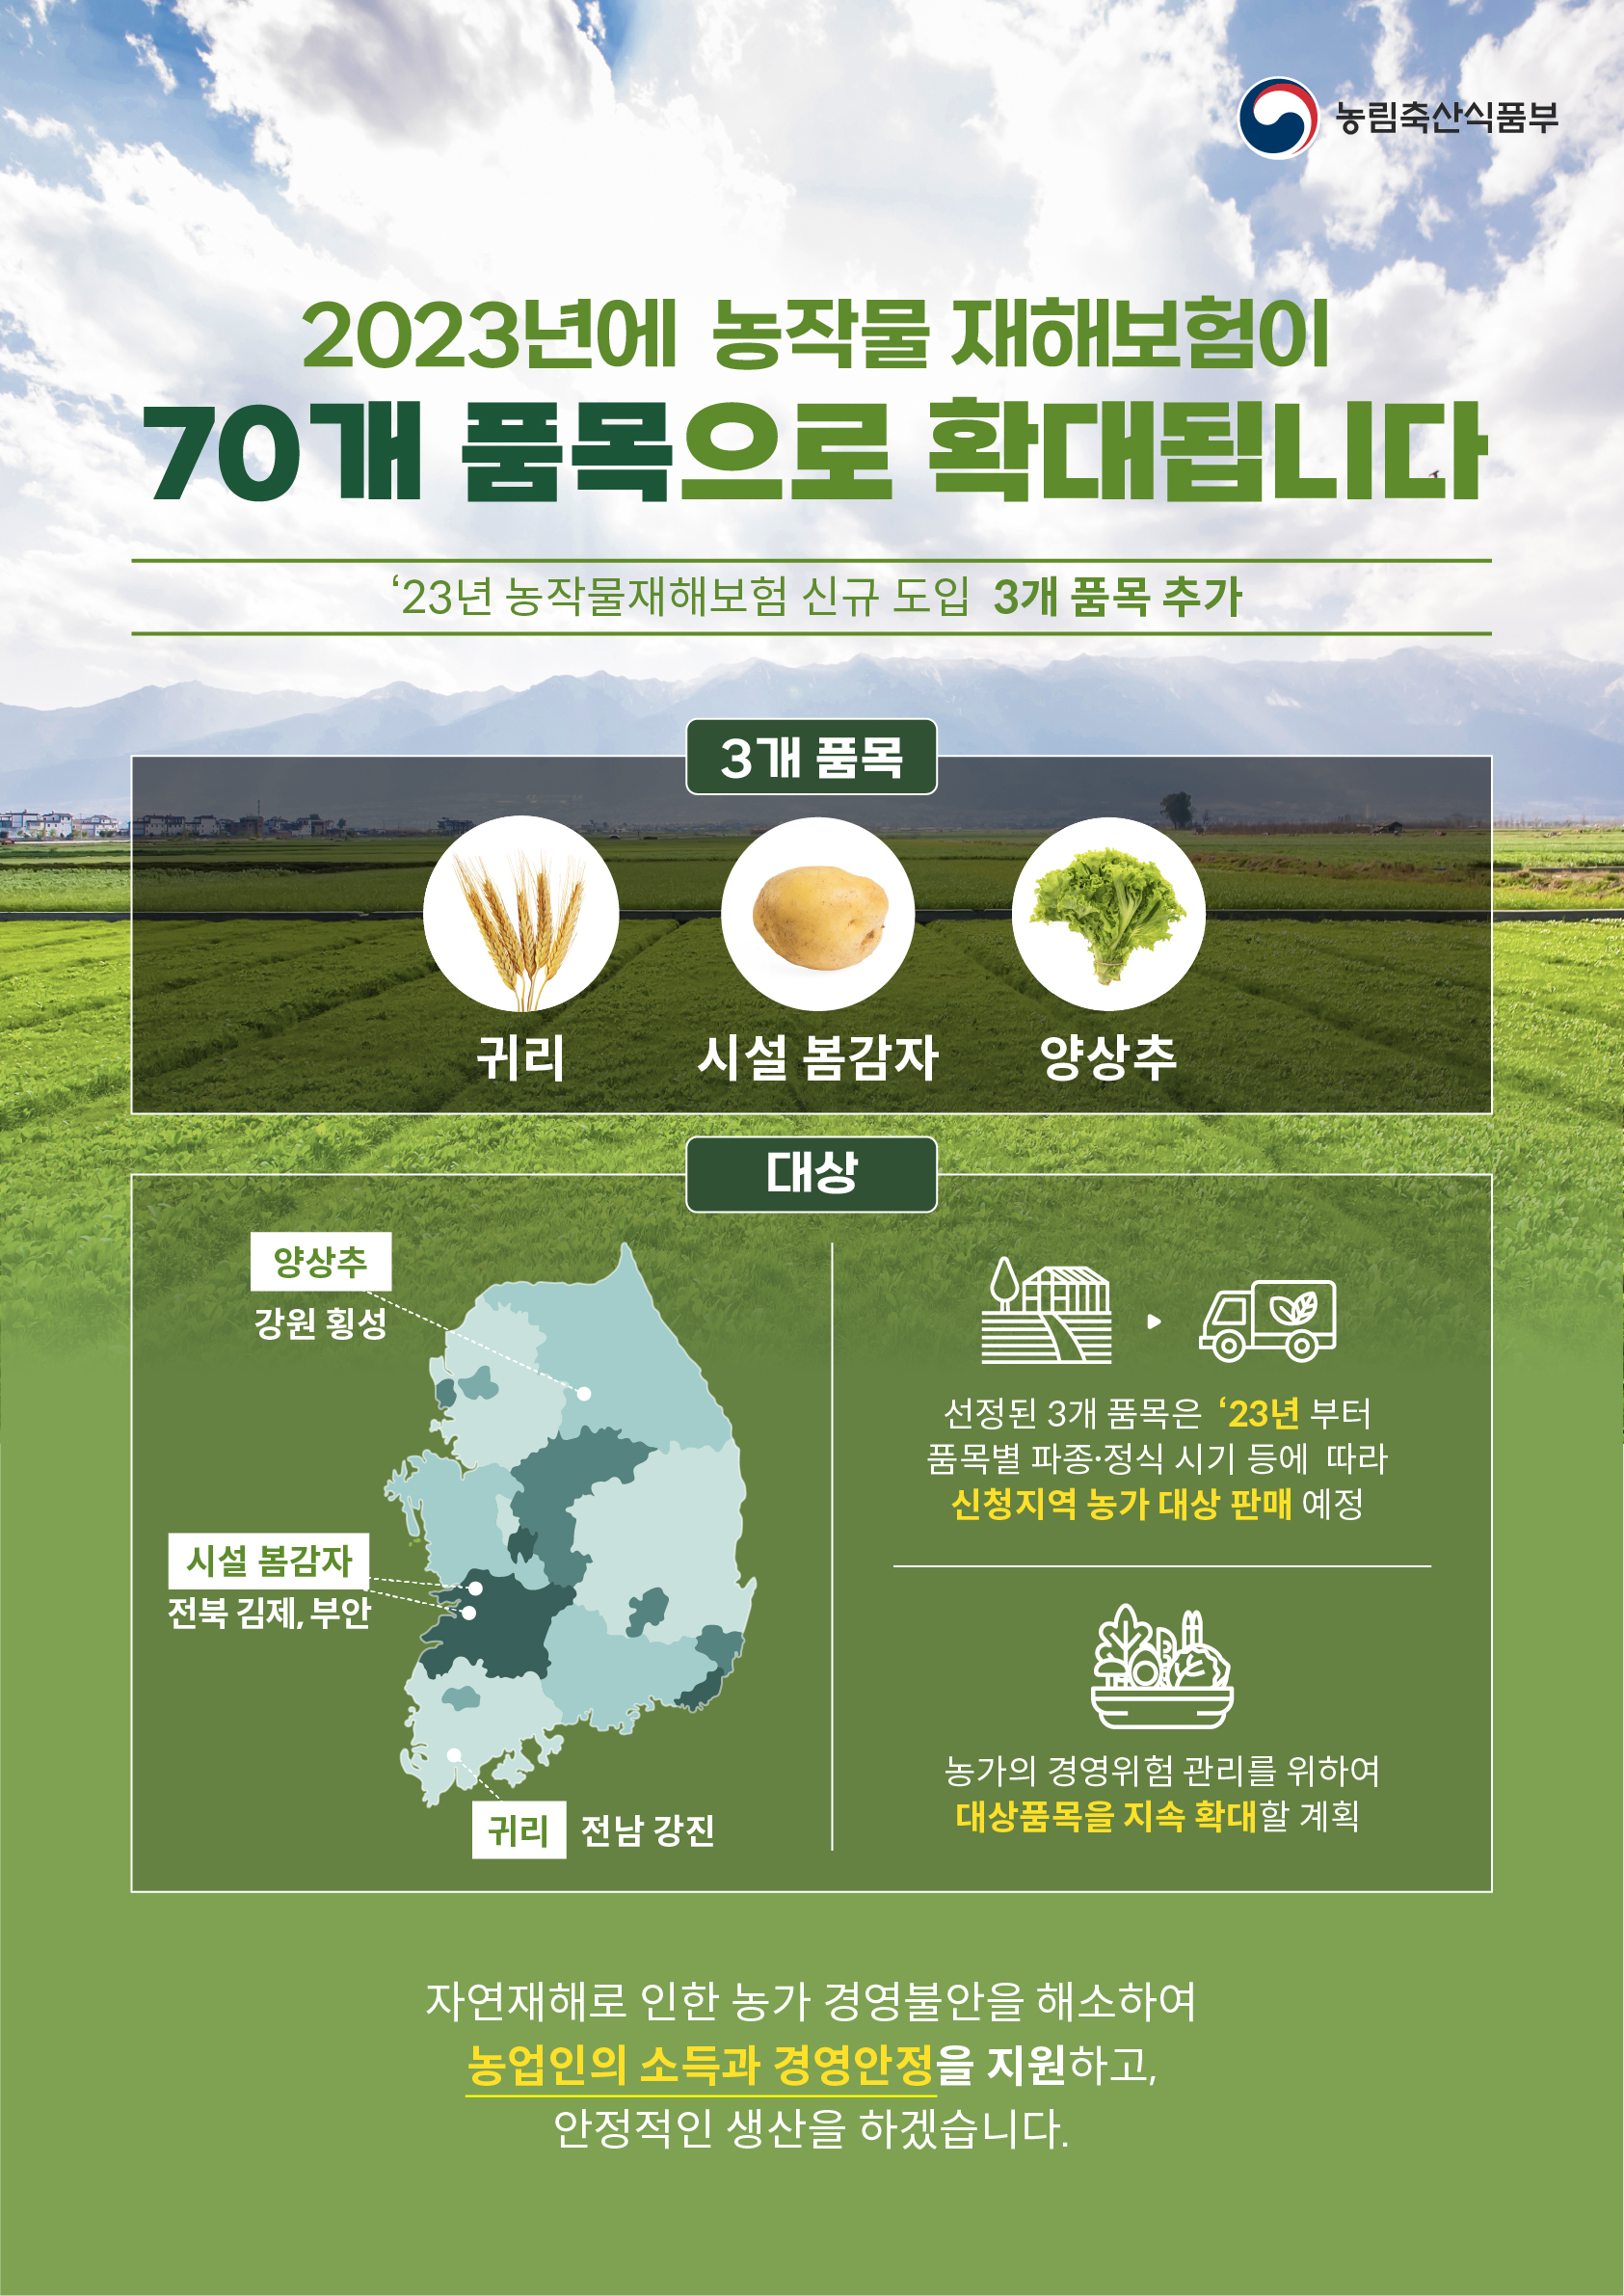 2023년에 농작물 재해보험이 70개 품목으로 확대됩니다. 2023년에 농작물 재해보험이 70개 품목으로 확대됩니다..jpg